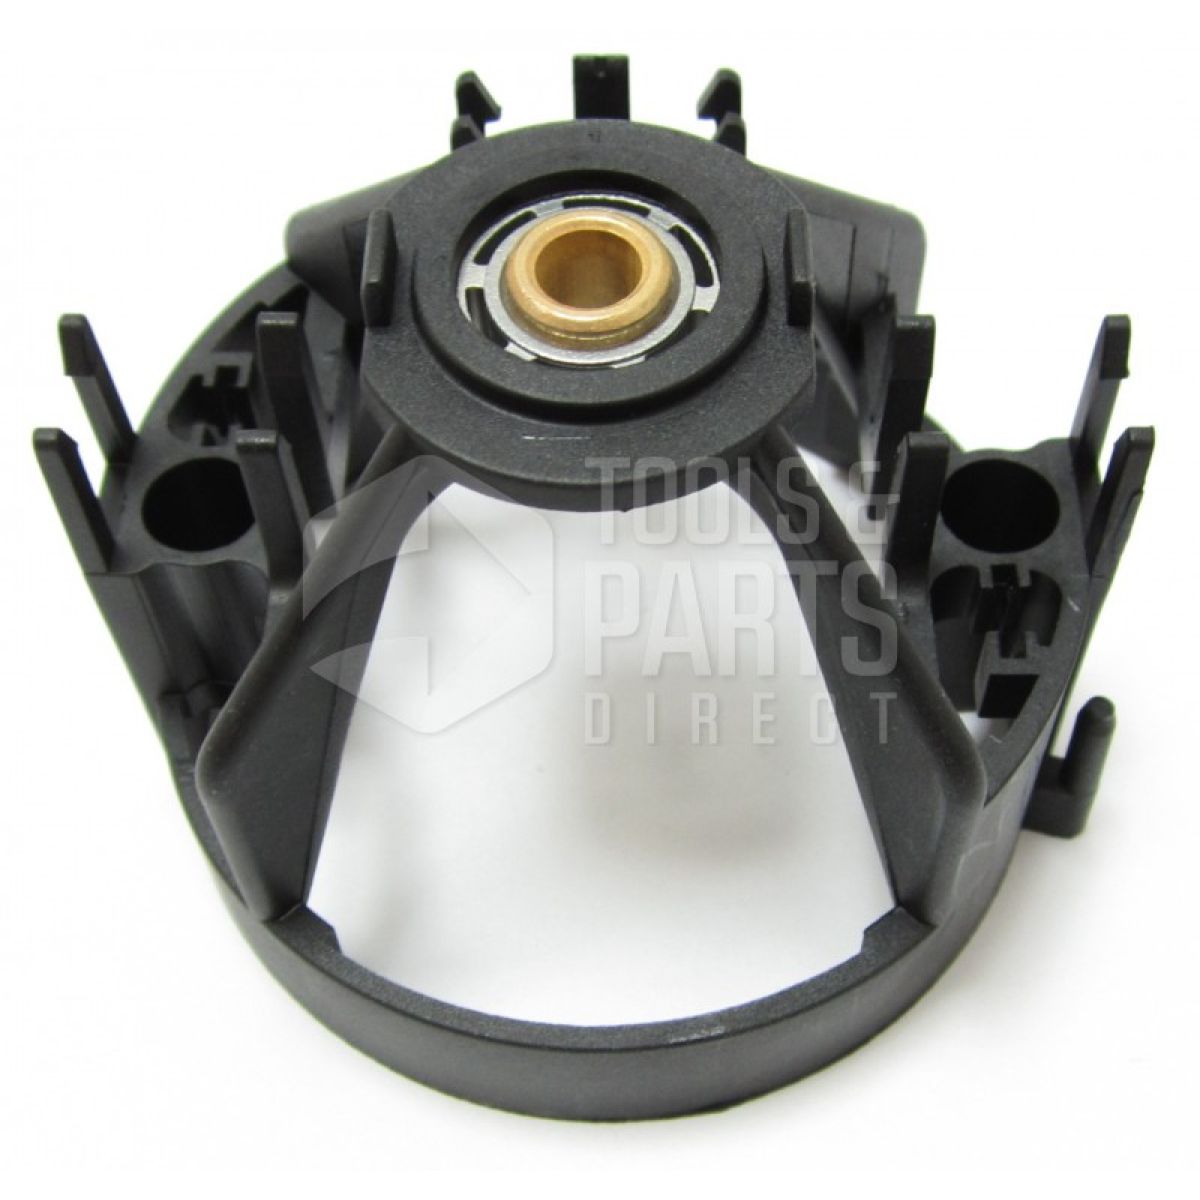 Black & Decker FP2650S Parts